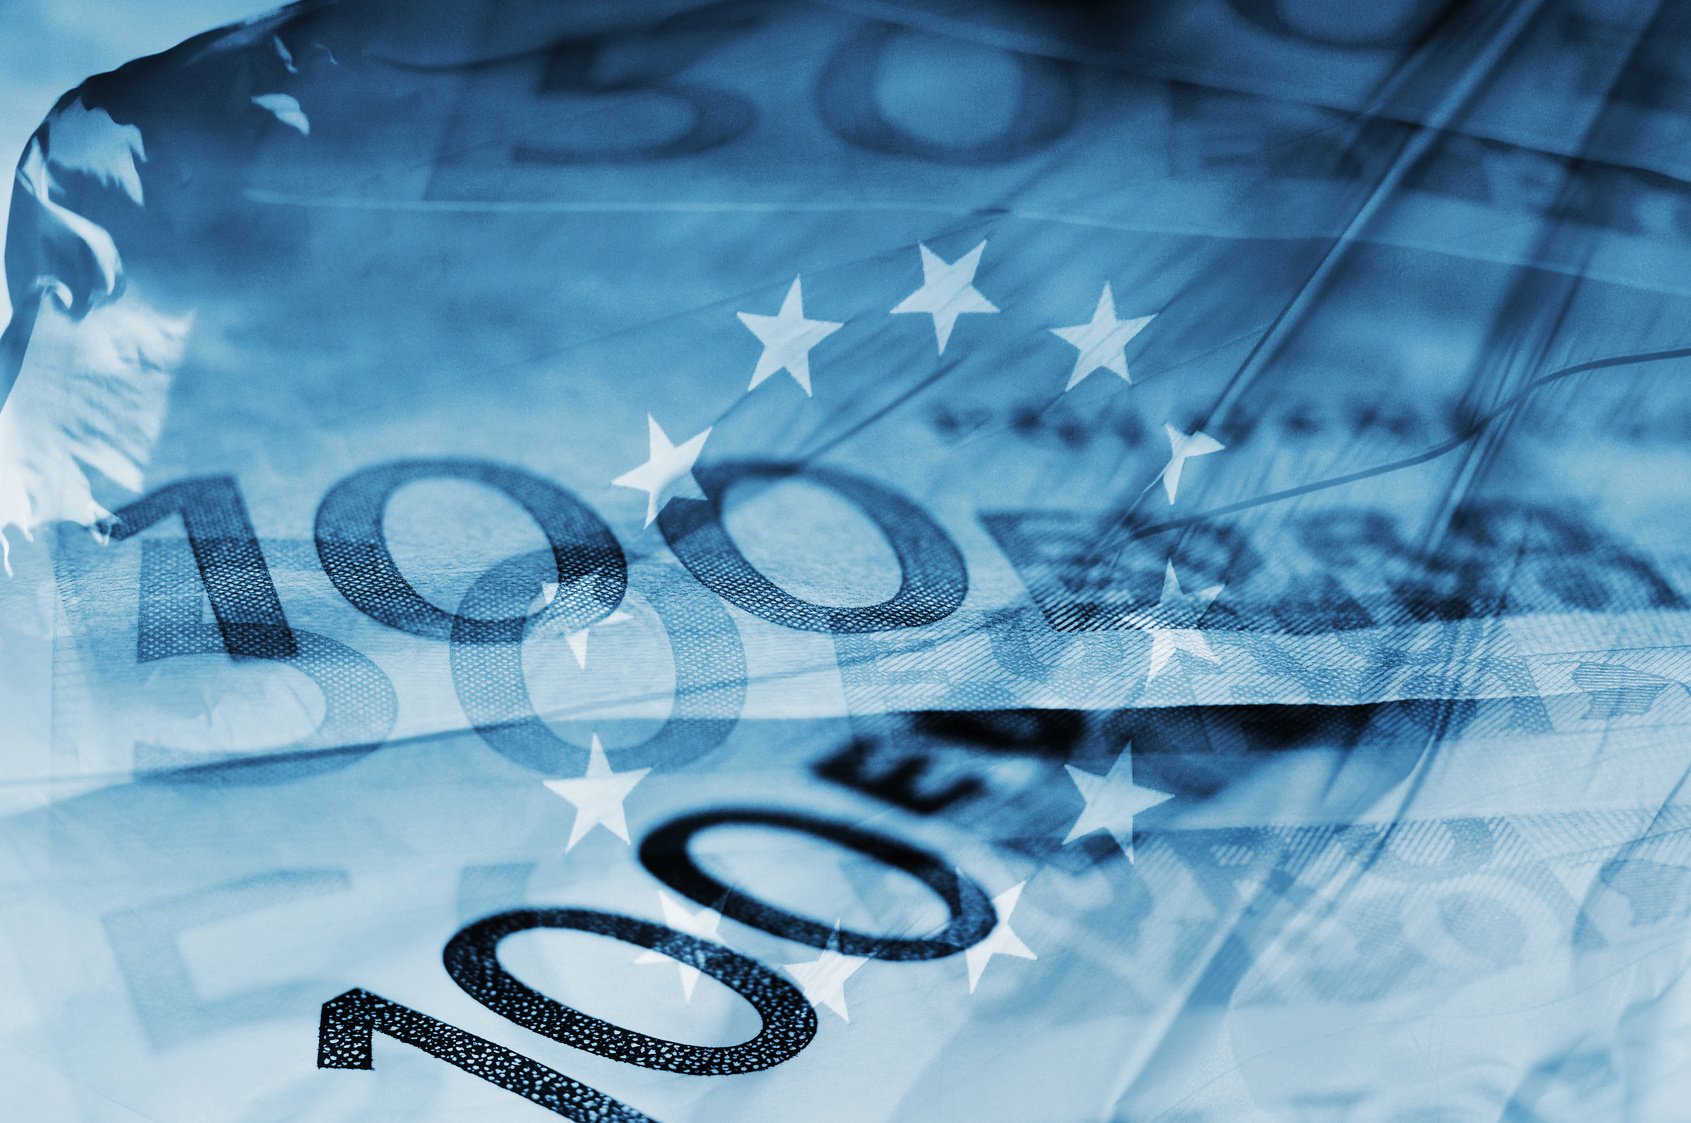 Υπουργείο Οικονομικών: Το ποσό-ρεκόρ των 4,85 δισ. ευρώ έφθασε η ετήσια χρηματοδότηση του Ομίλου ΕΤΕπ στην Ελλάδα το 2021, συμπεριλαμβανομένων 2,7 δισ. ευρώ μέσω του νέου Πανευρωπαϊκού Ταμείου Εγγυήσεων για την απόκριση στην πανδημία της COVID-19